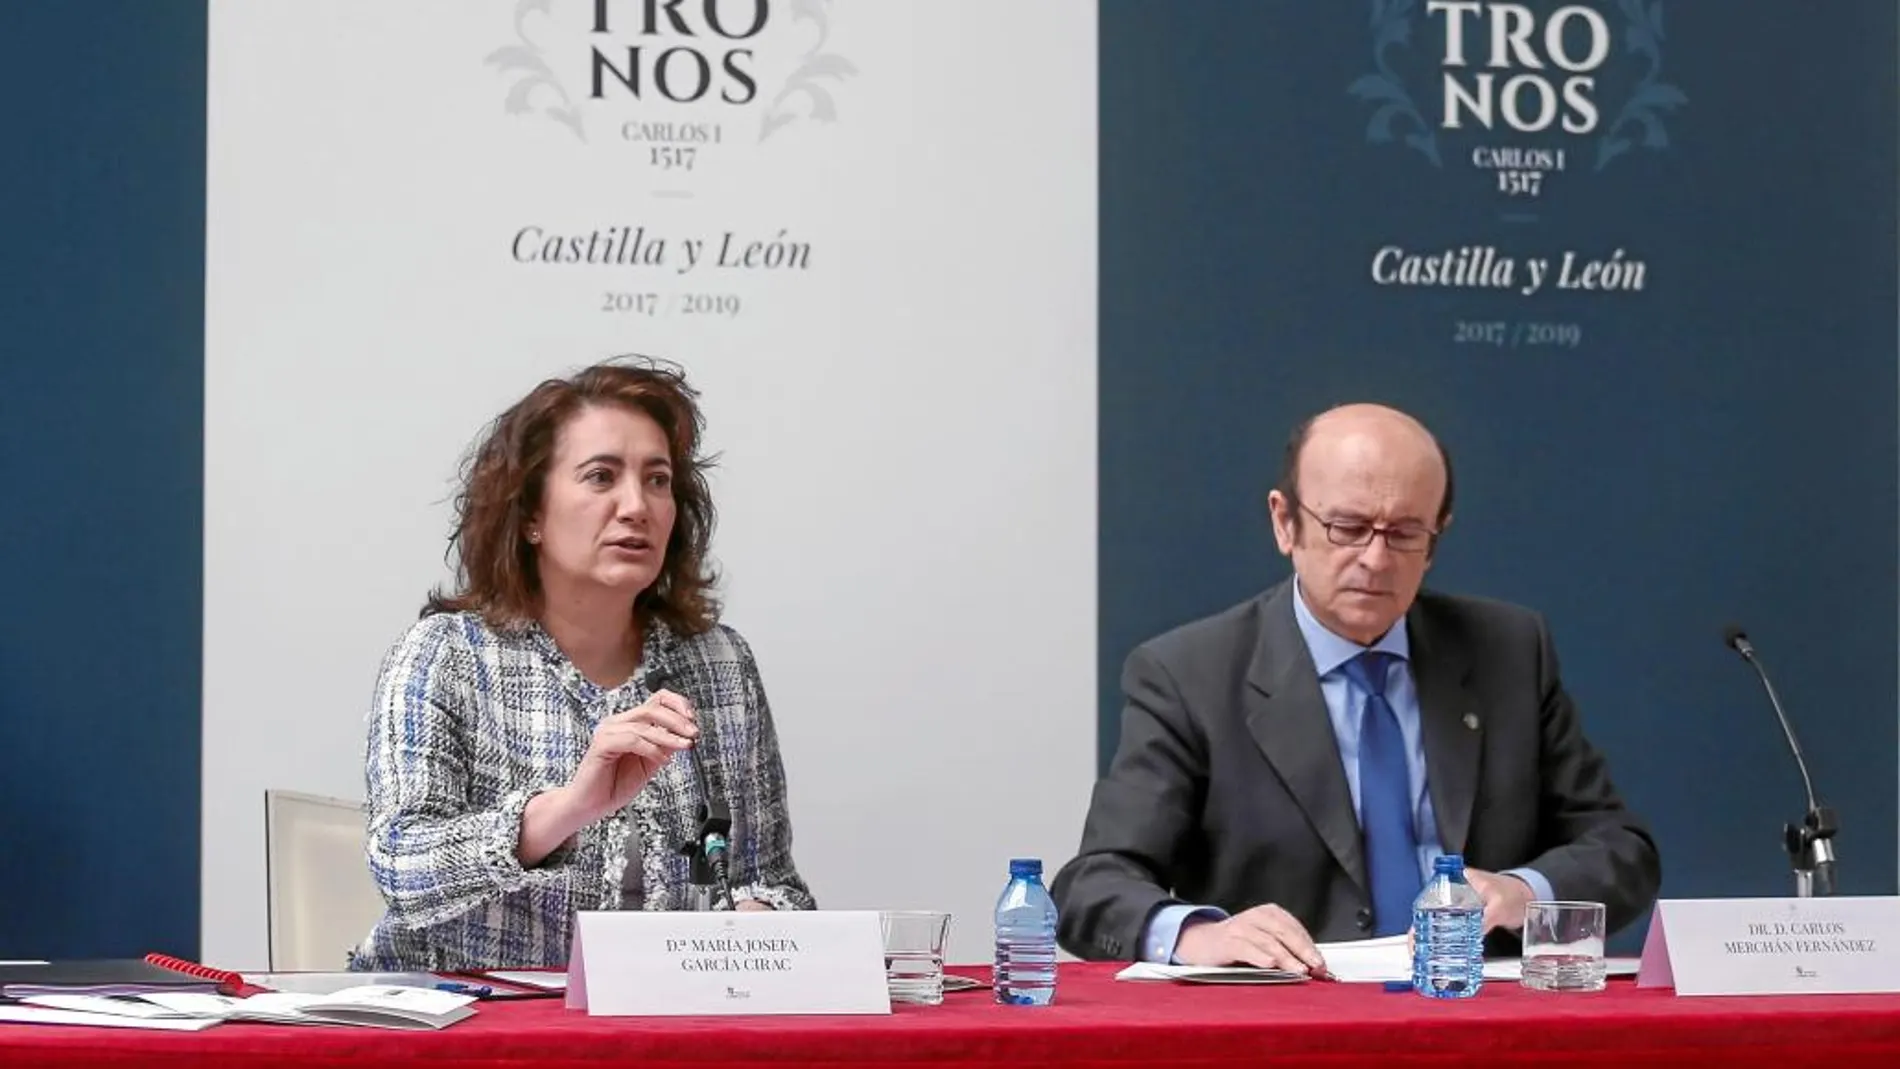 La consejera María Josefa García Cirac presenta el programa de actividades junto al catedrático Carlos Merchán (D)